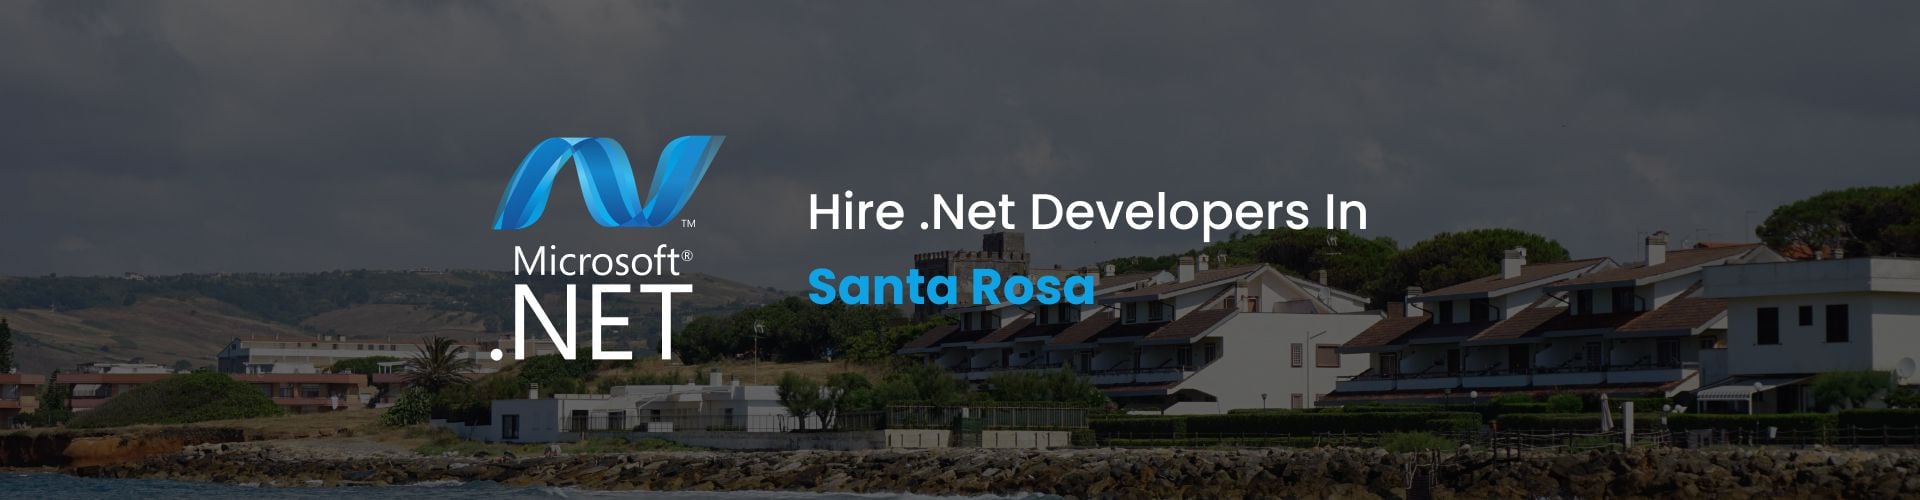 hire dot net developers in santa rosa